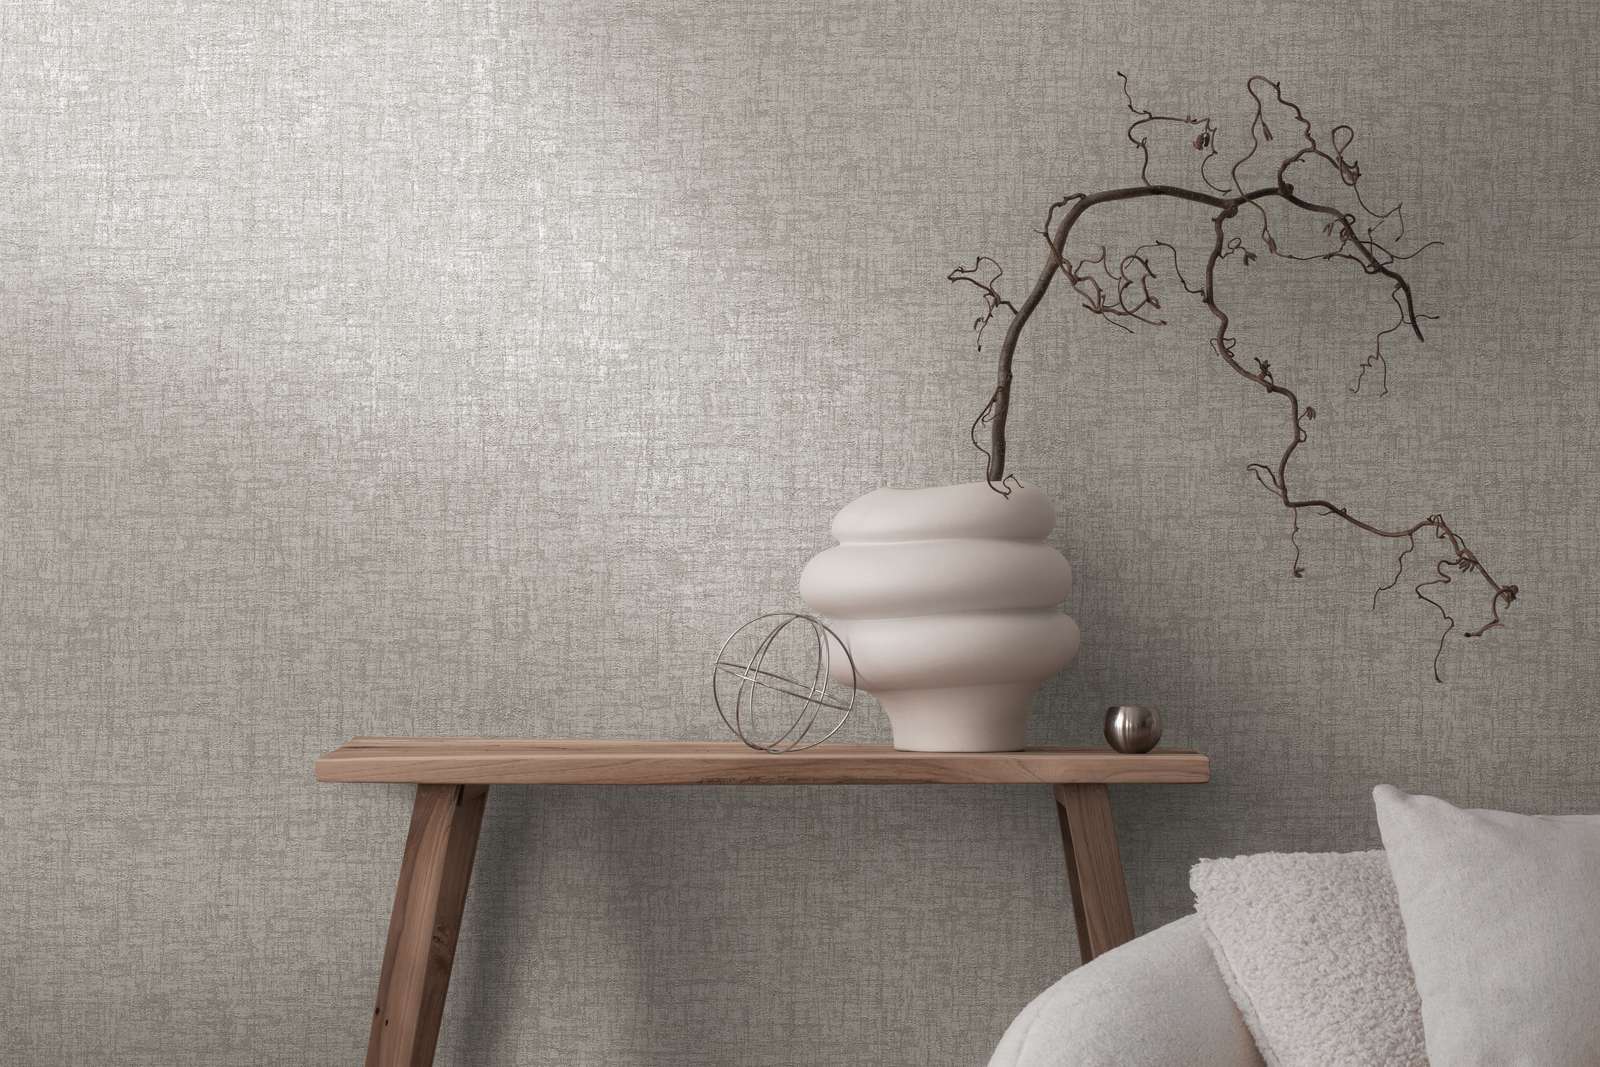             Vliesbehang met textuur in textiellook - grijs, donkergrijs
        